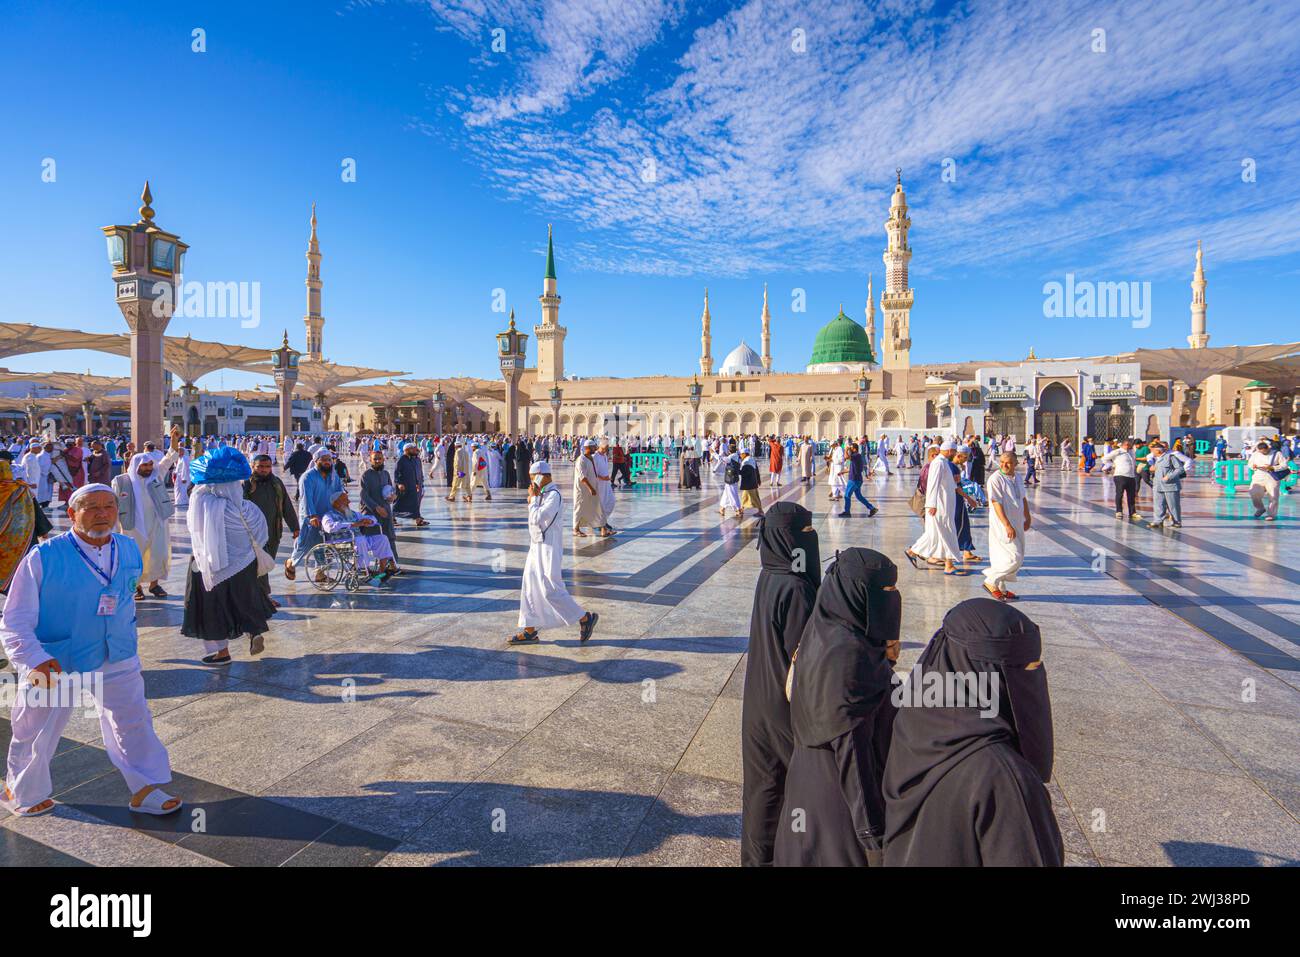 Al-Madinah al-Munawwarah - 09 mars 2023, les pèlerins traversent la mosquée principale du prophète Muhammad Al-Masjid an-Nabawi, Médine, Arabie saoudite Banque D'Images